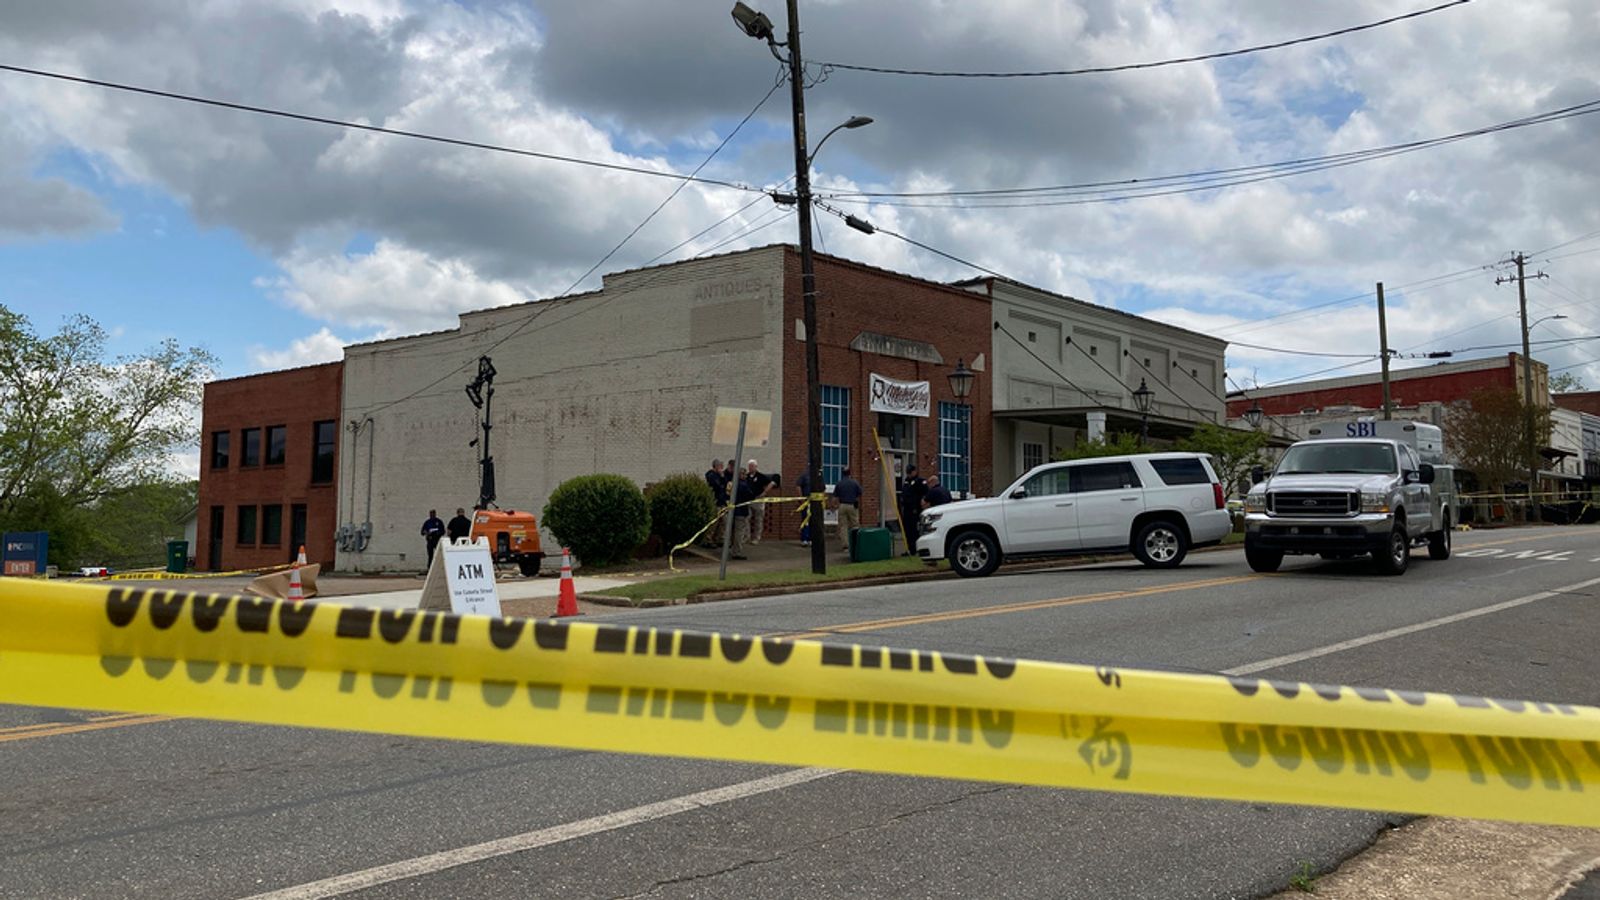 Xả súng trong tiệc sinh nhật ở bang Alabama khiến 4 người thiệt mạng, nhiều người bị thương - Ảnh 1.